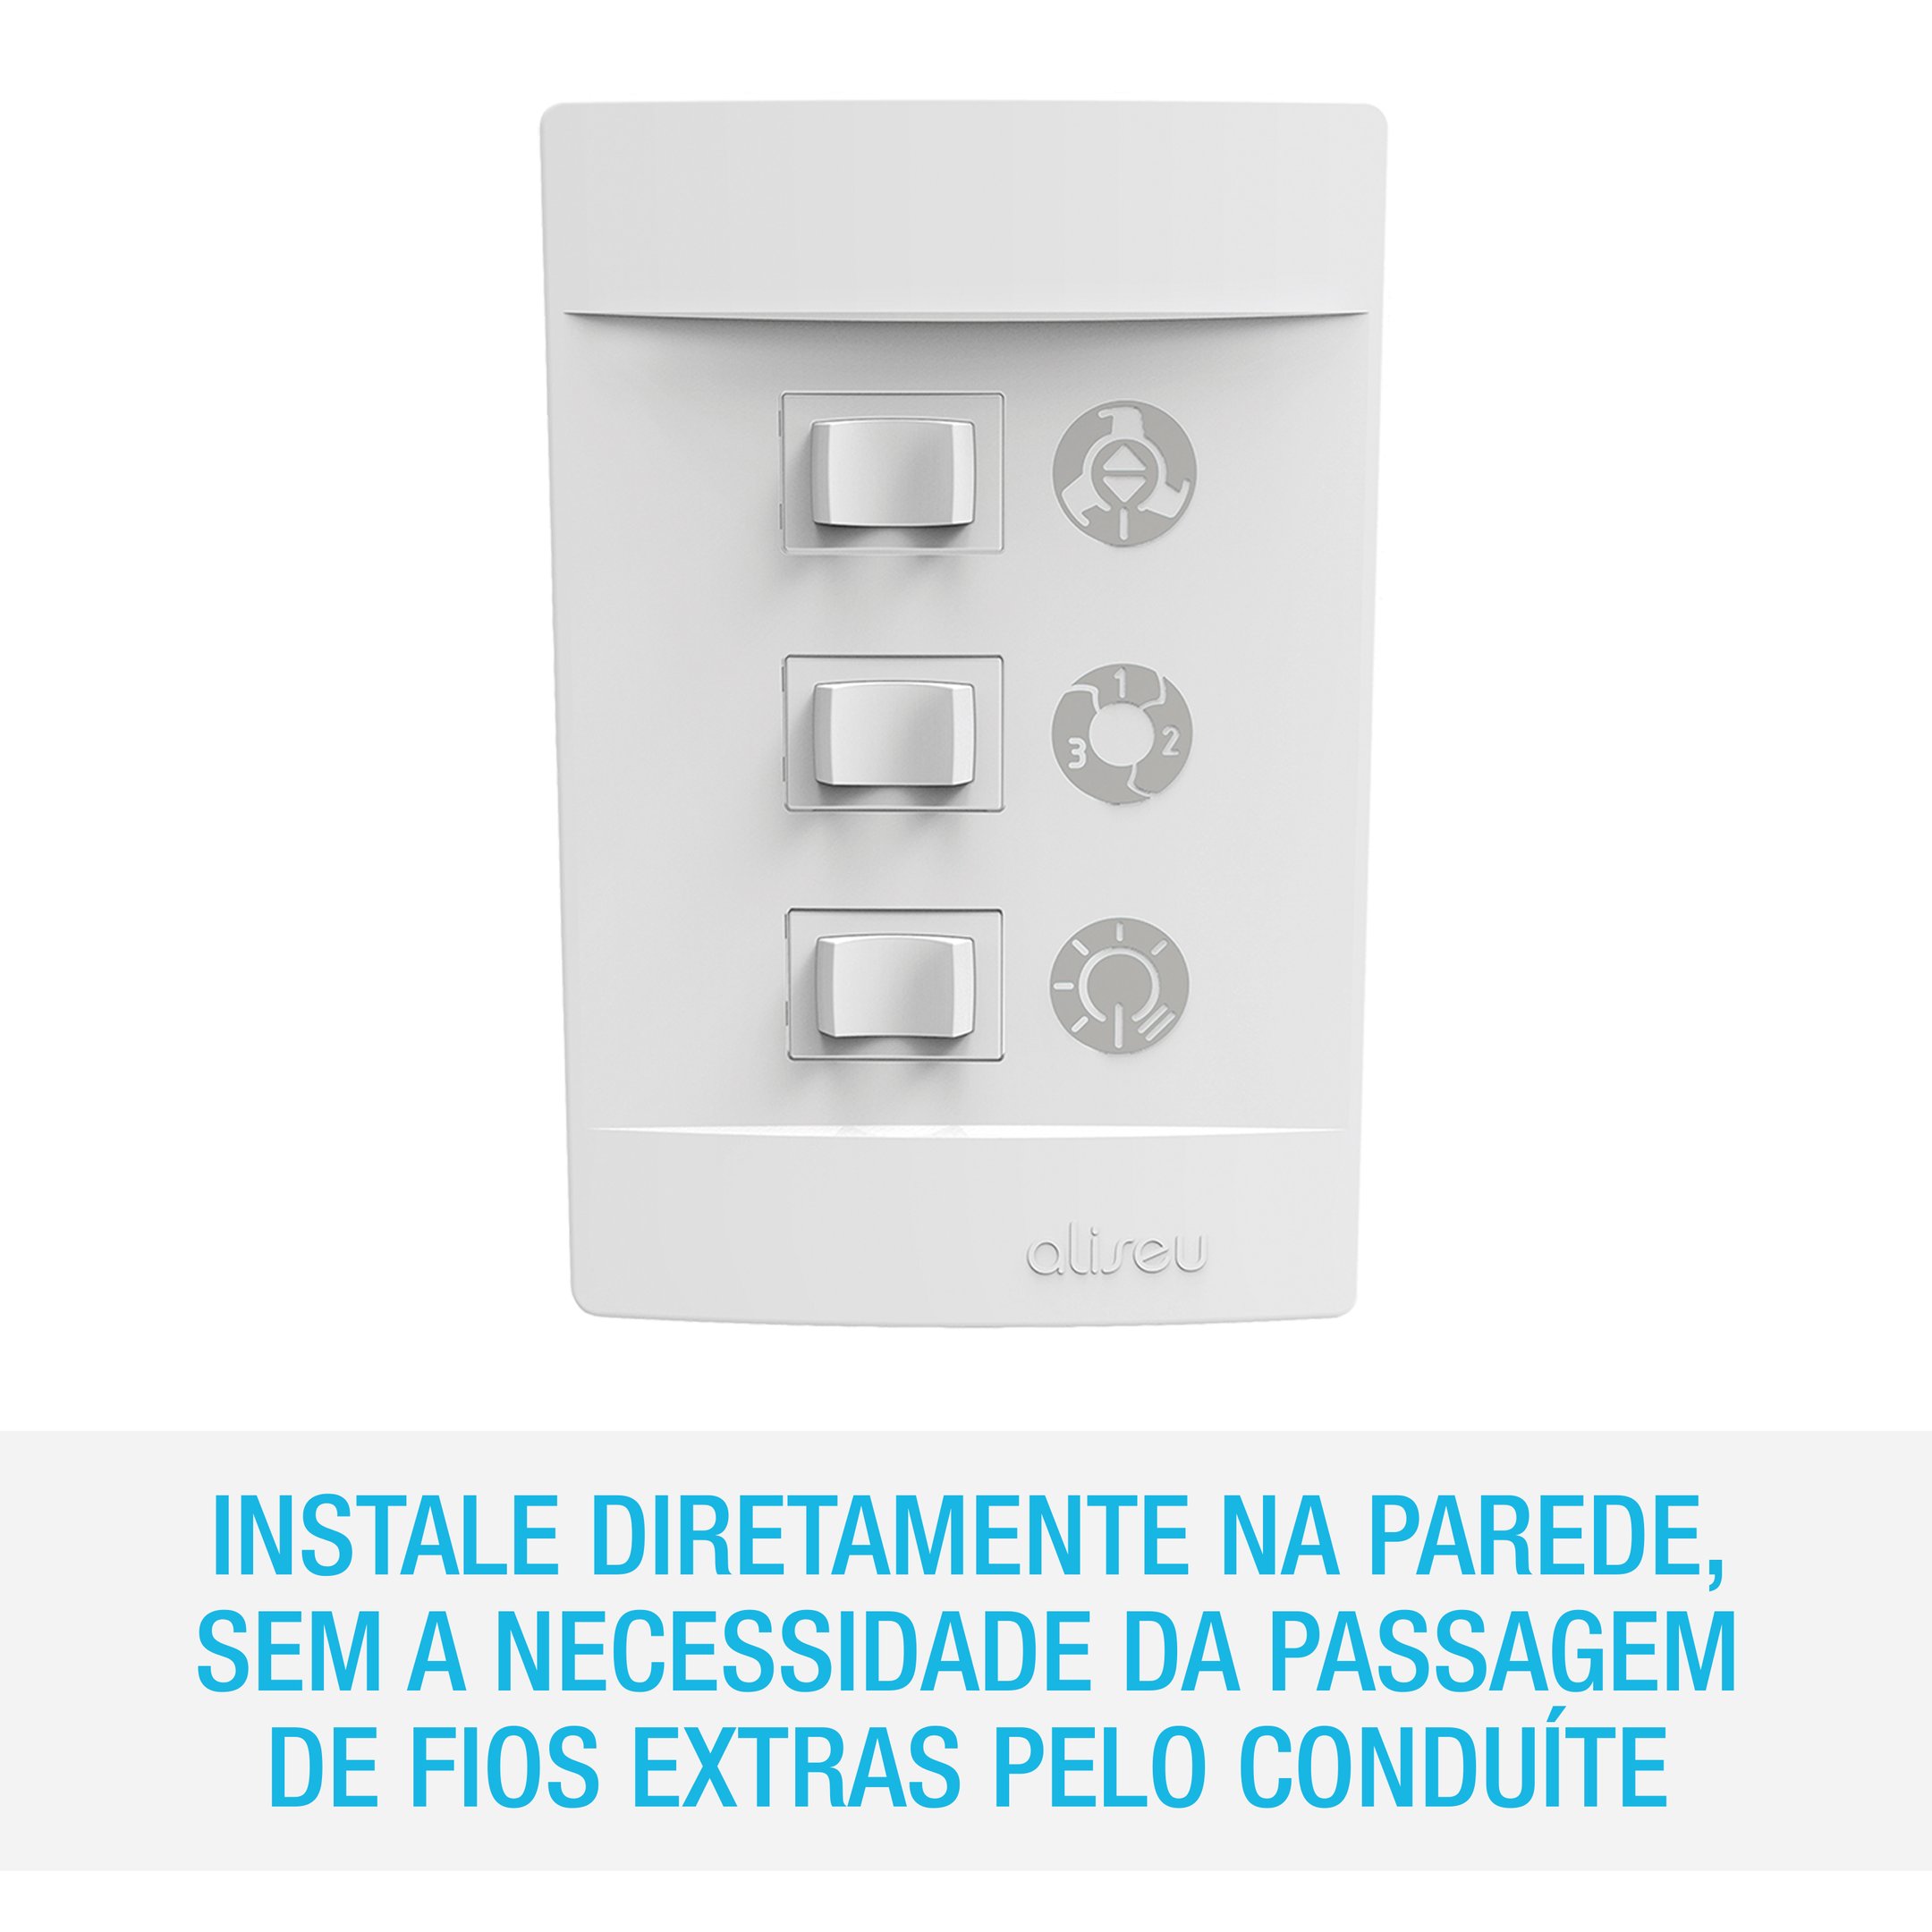 Ventilador de Teto Aliseu Terral com Controle Remoto, Parede e Bluetooth. 220v - Preto - 8